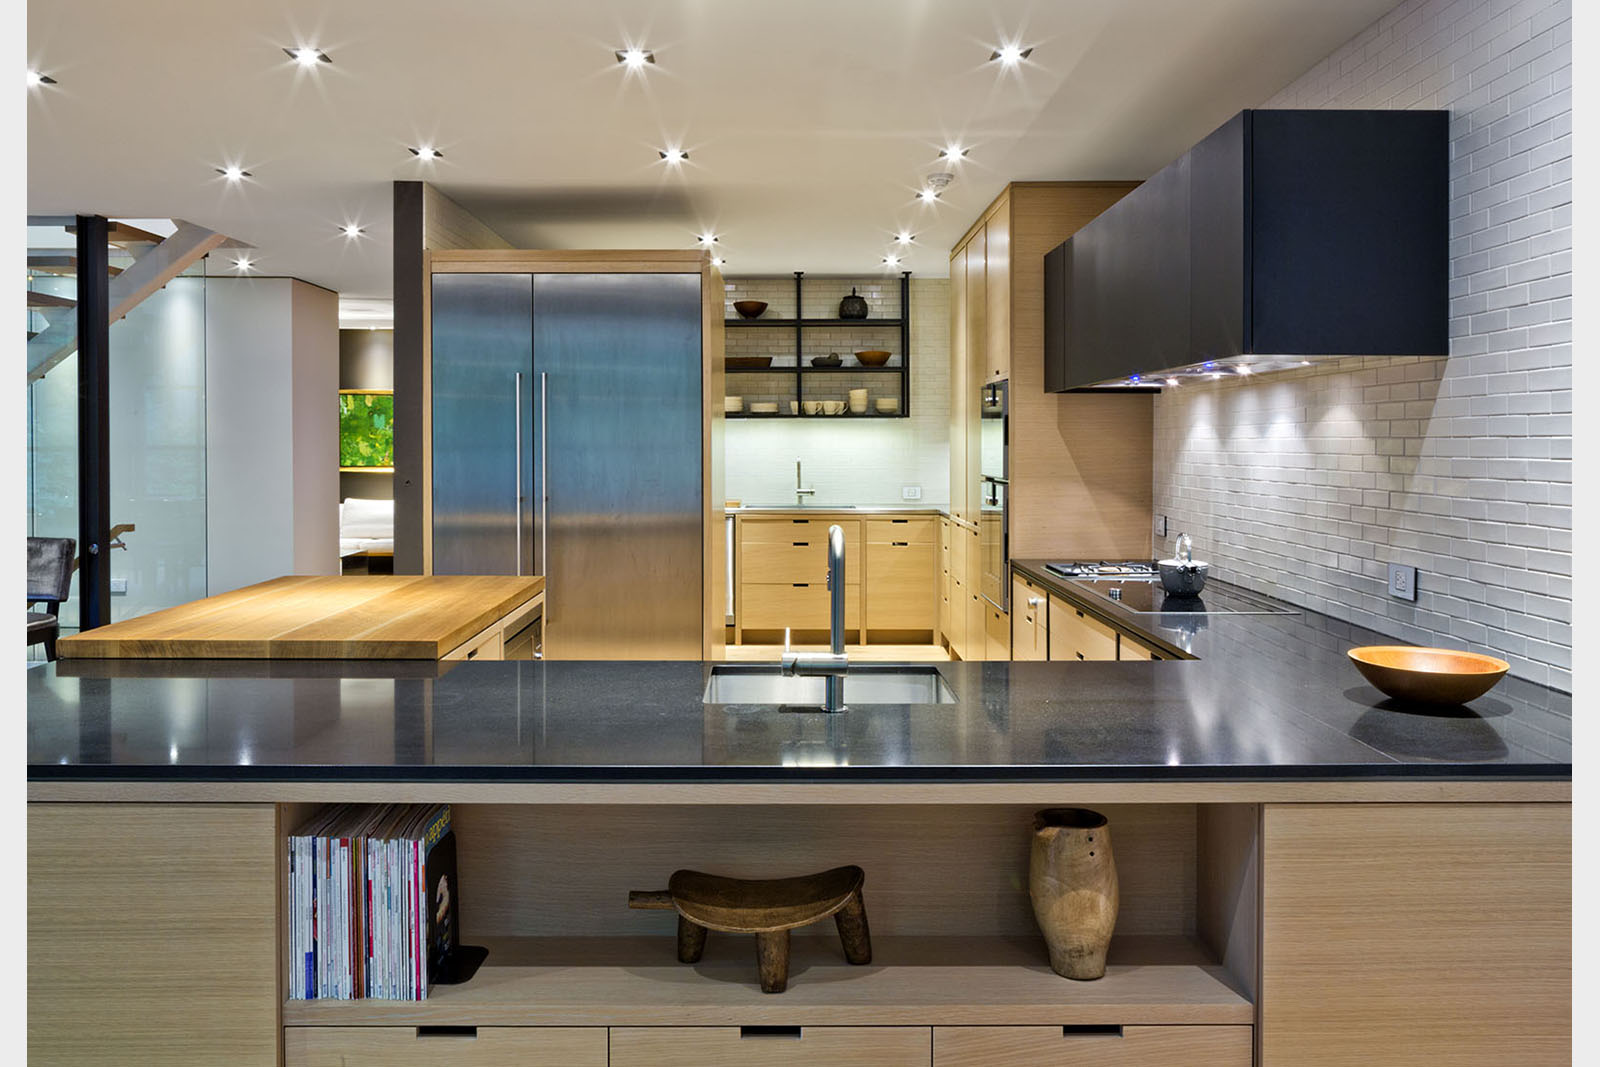 Ontario’s modern apartment kitchen